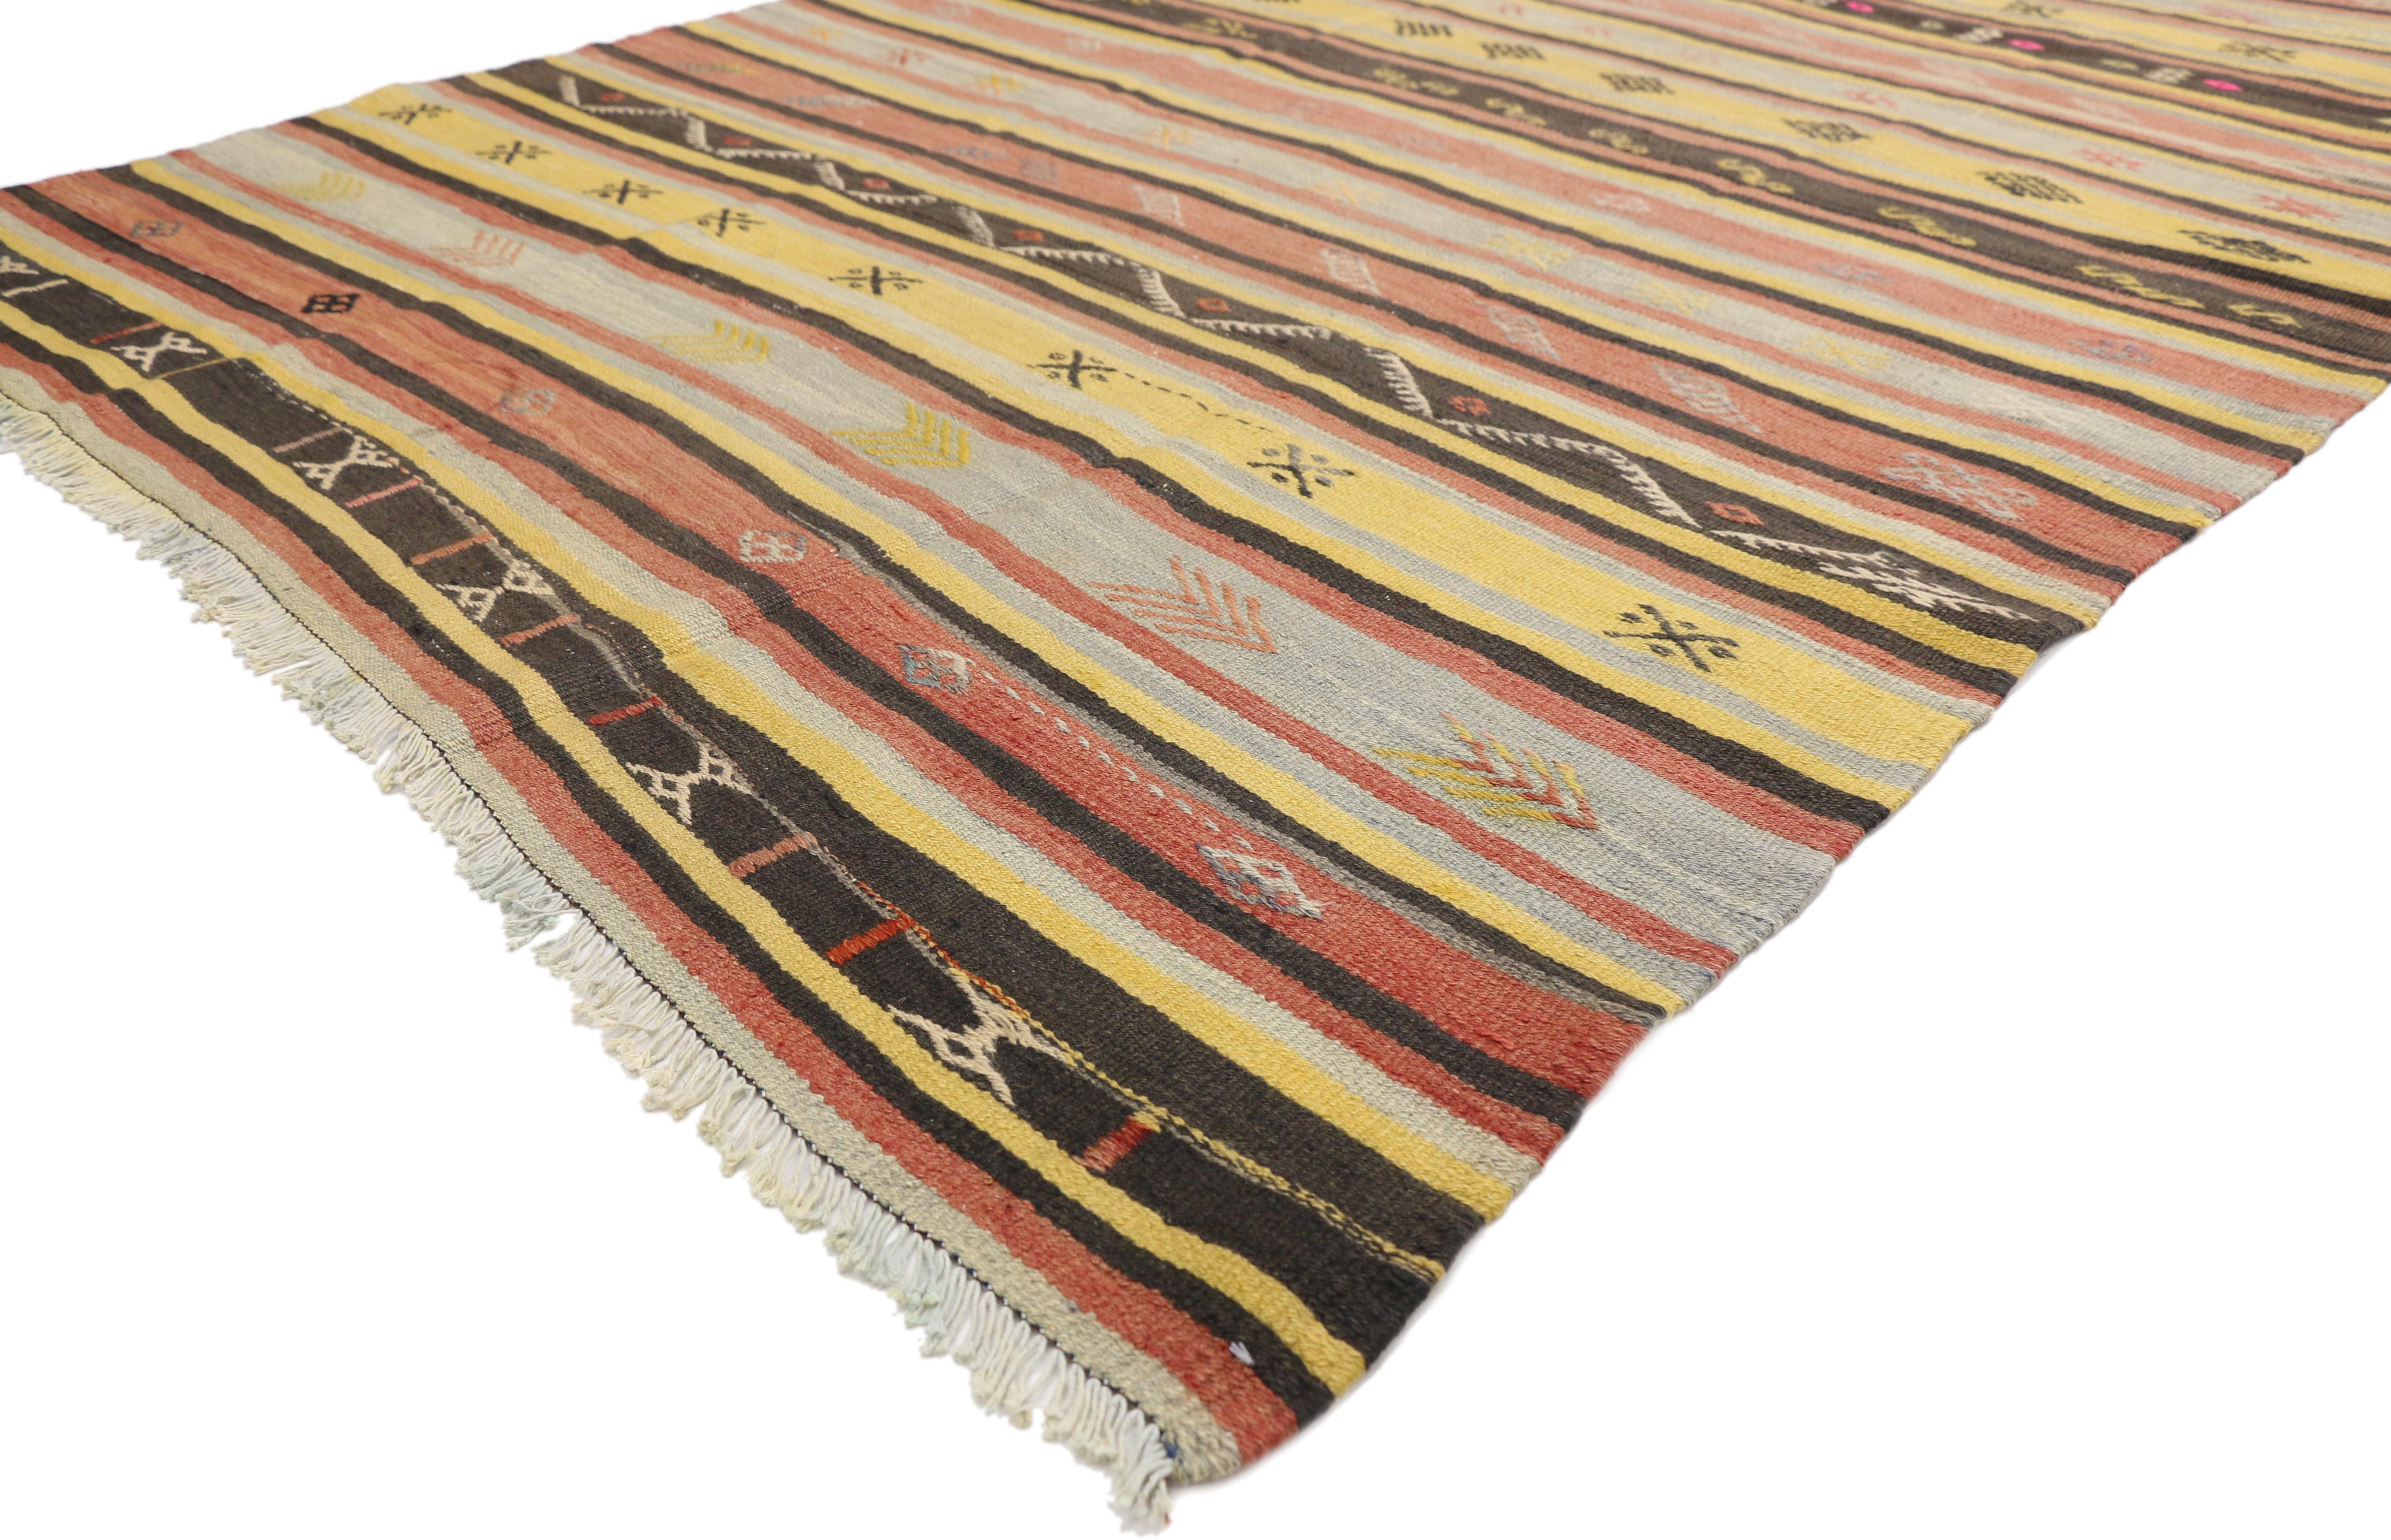 51280, Türkischer Kilim-Teppich, flachgewebter Kilim-Stammesteppich. Dieser handgewebte türkische Kilim-Teppich aus Wolle zeigt abwechselnde Bänder mit alten Stammesmotiven und Streifen. Dieser Kelimteppich ist reich an türkischer Kultur, denn die